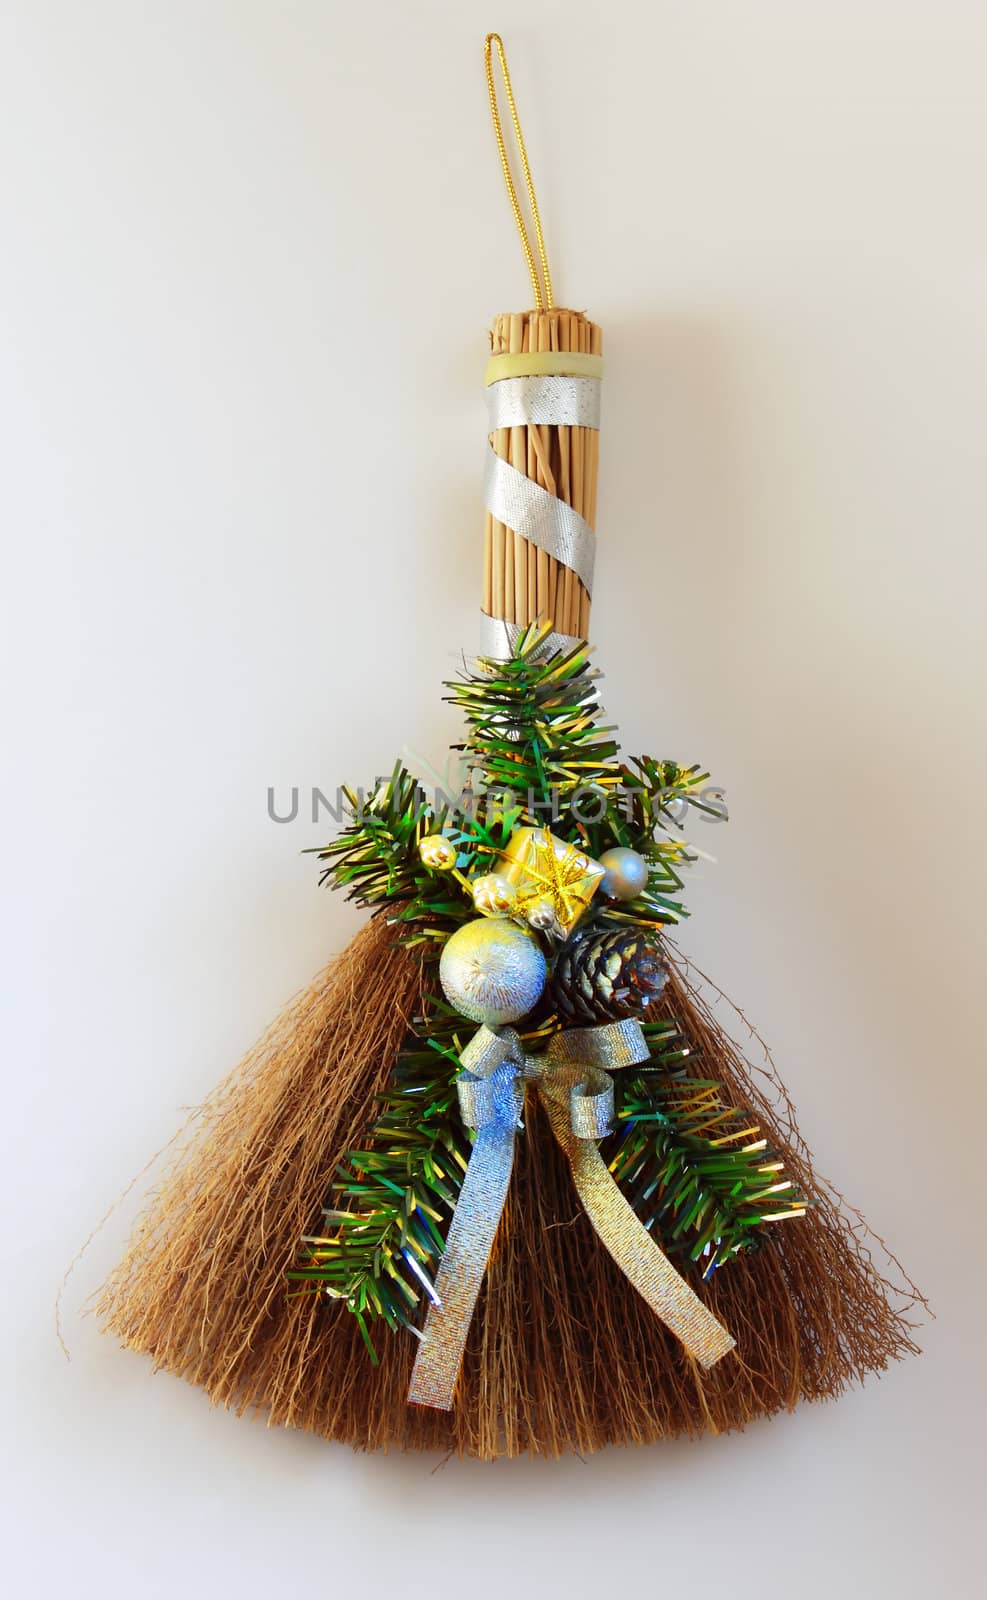 Christmas broom by nwp